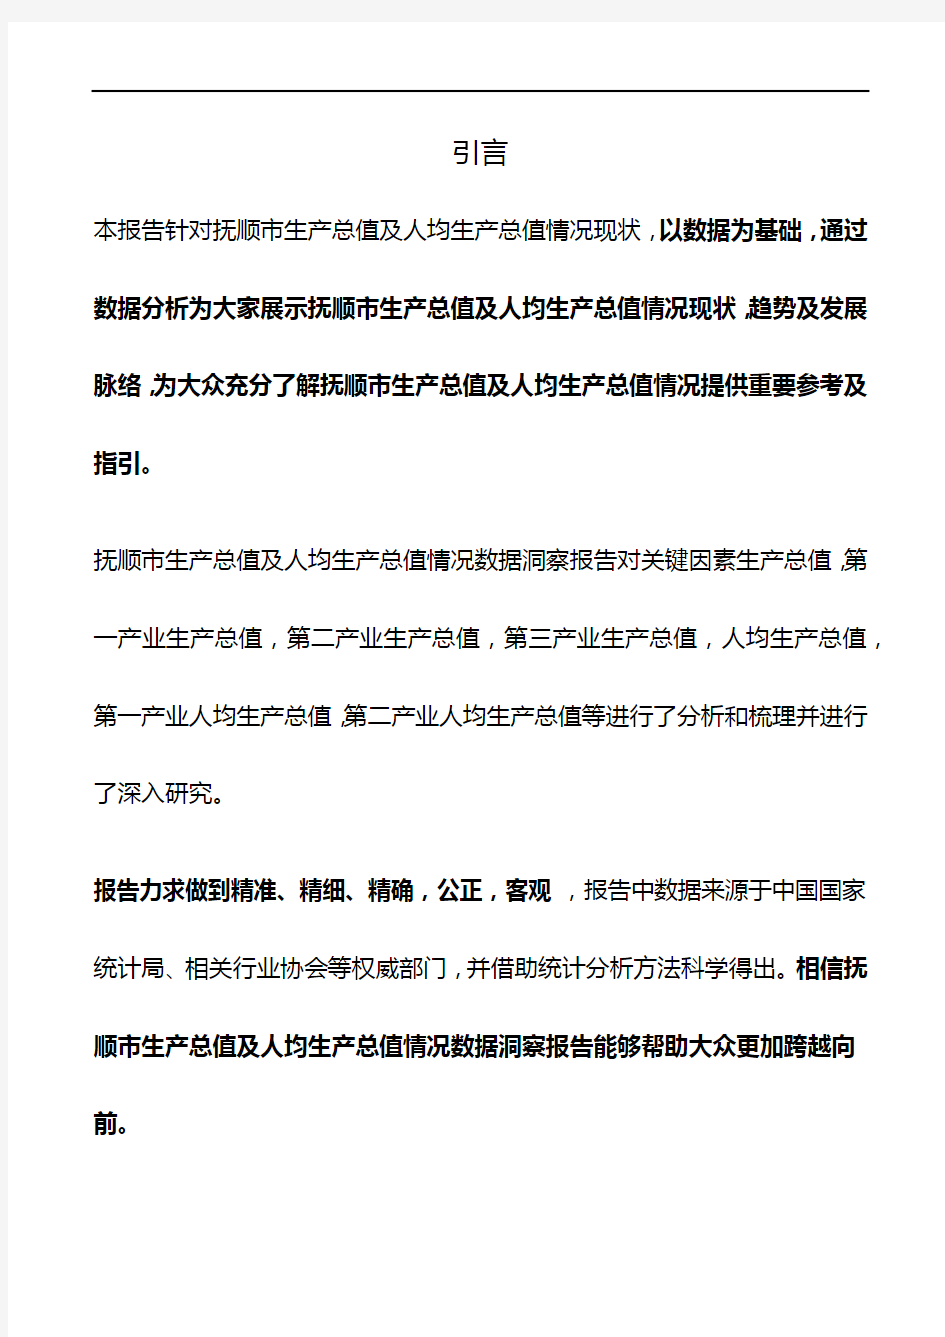 辽宁省抚顺市生产总值及人均生产总值情况数据洞察报告2019版